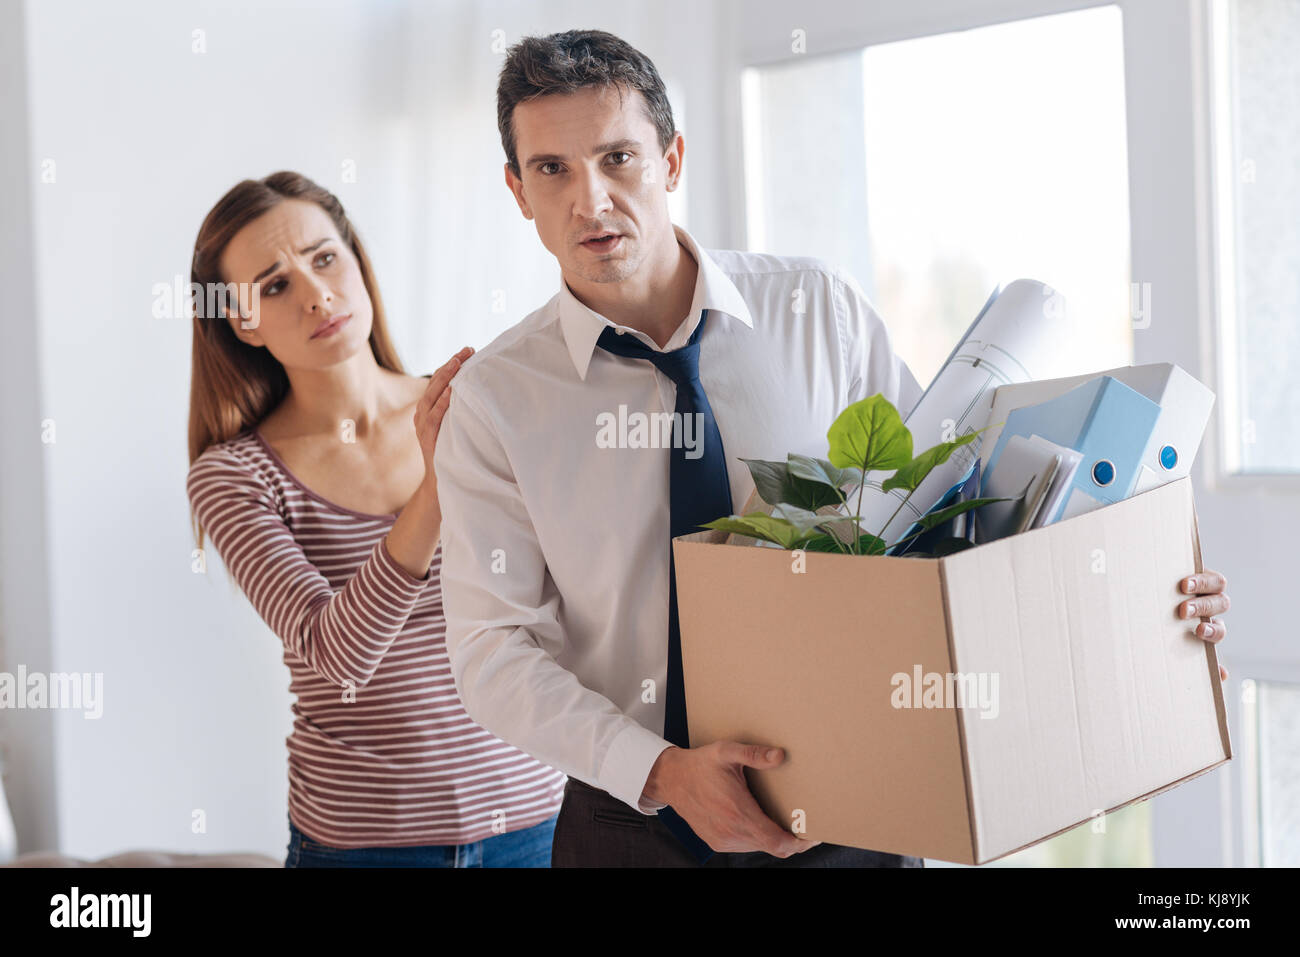 Destituido el hombre lleva una caja pesada mientras su esposa le reconfortante Foto de stock